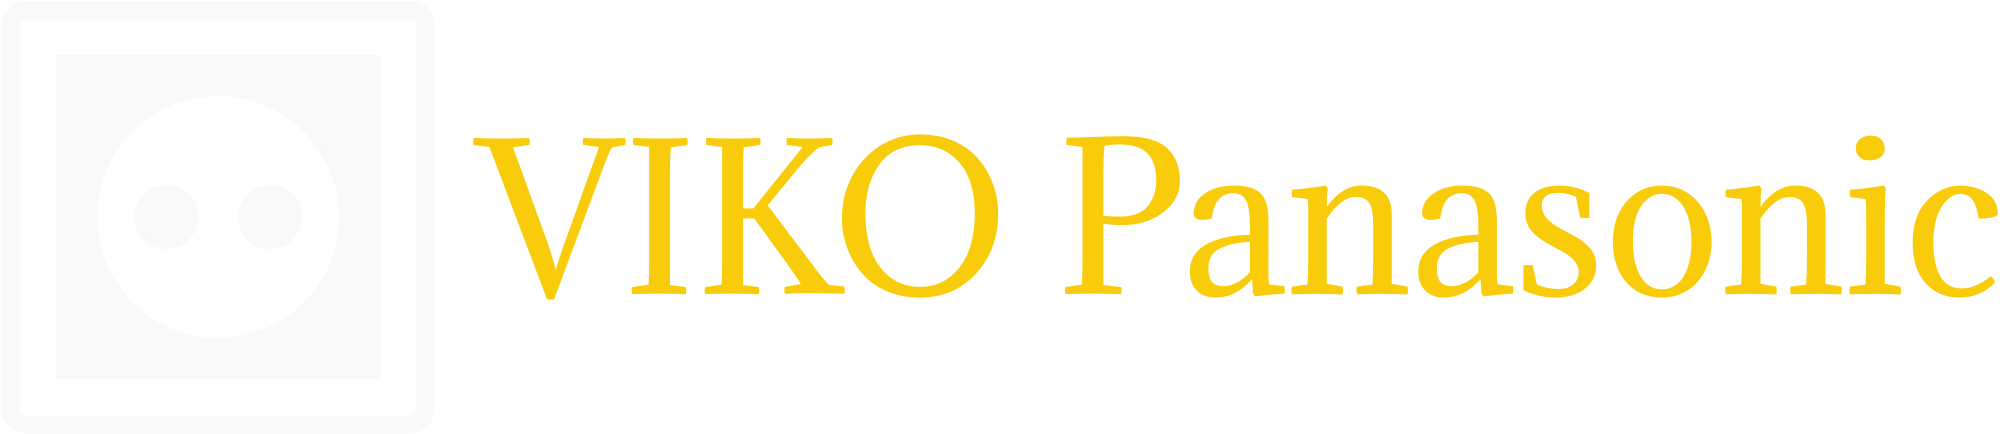 VIKO Panasonic - informacje o gniazdkach